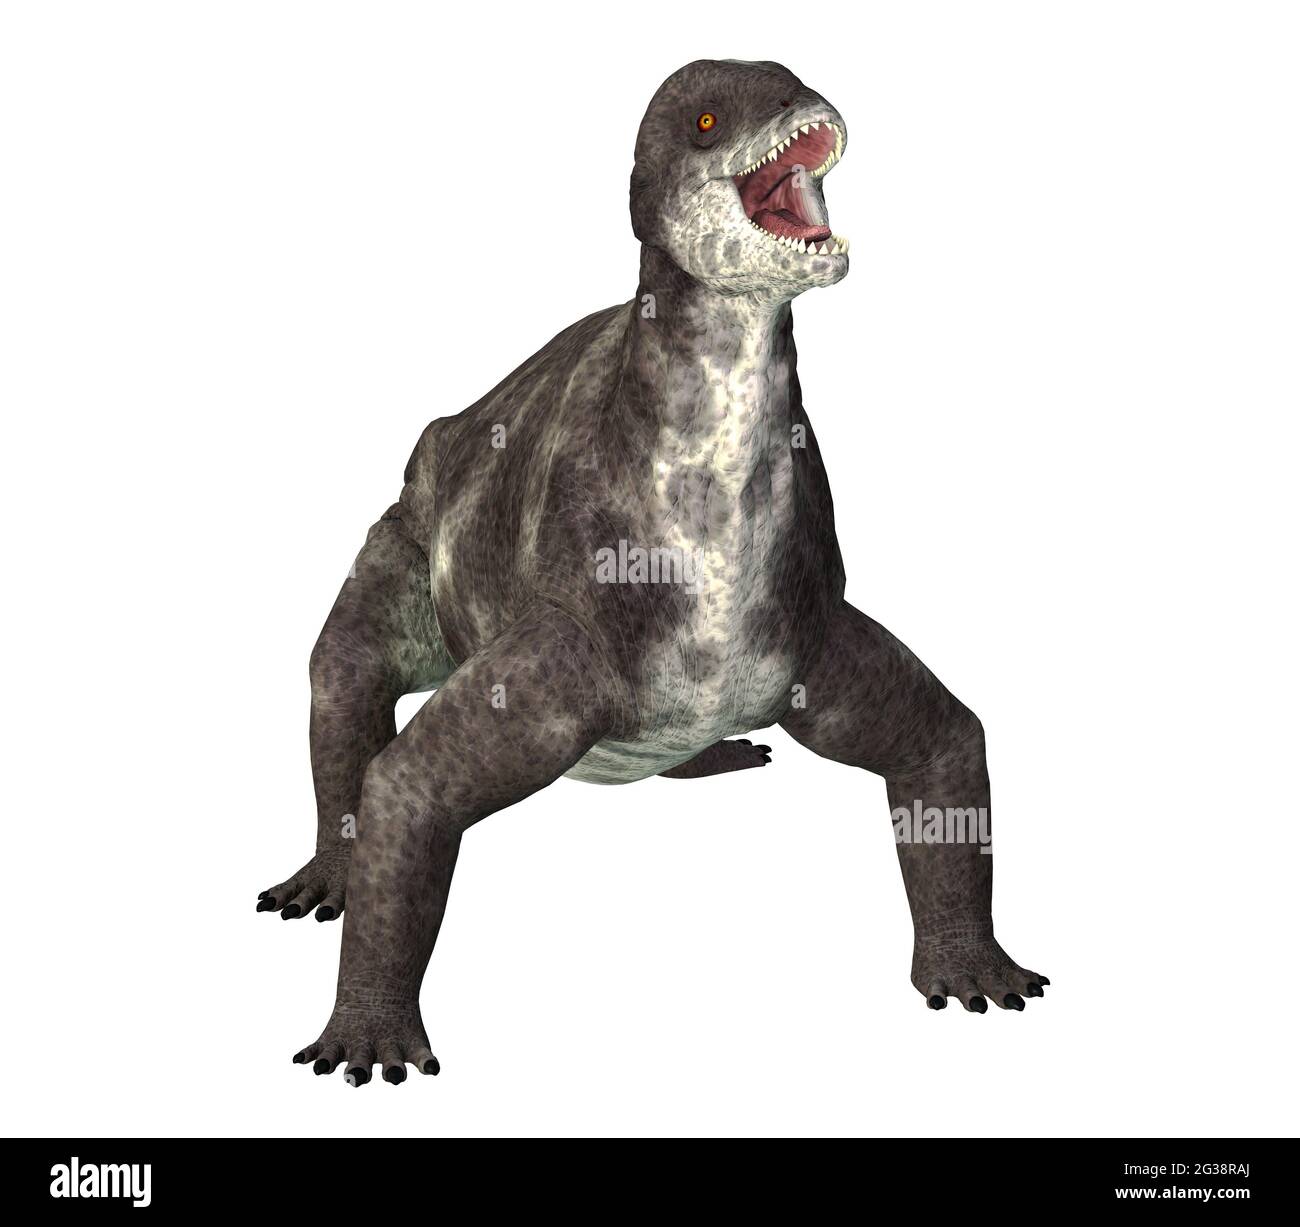 Criocephalosaurus war ein therapsider Dinosaurier, der während der Perm- Periode Südafrikas lebte Stockfotografie - Alamy